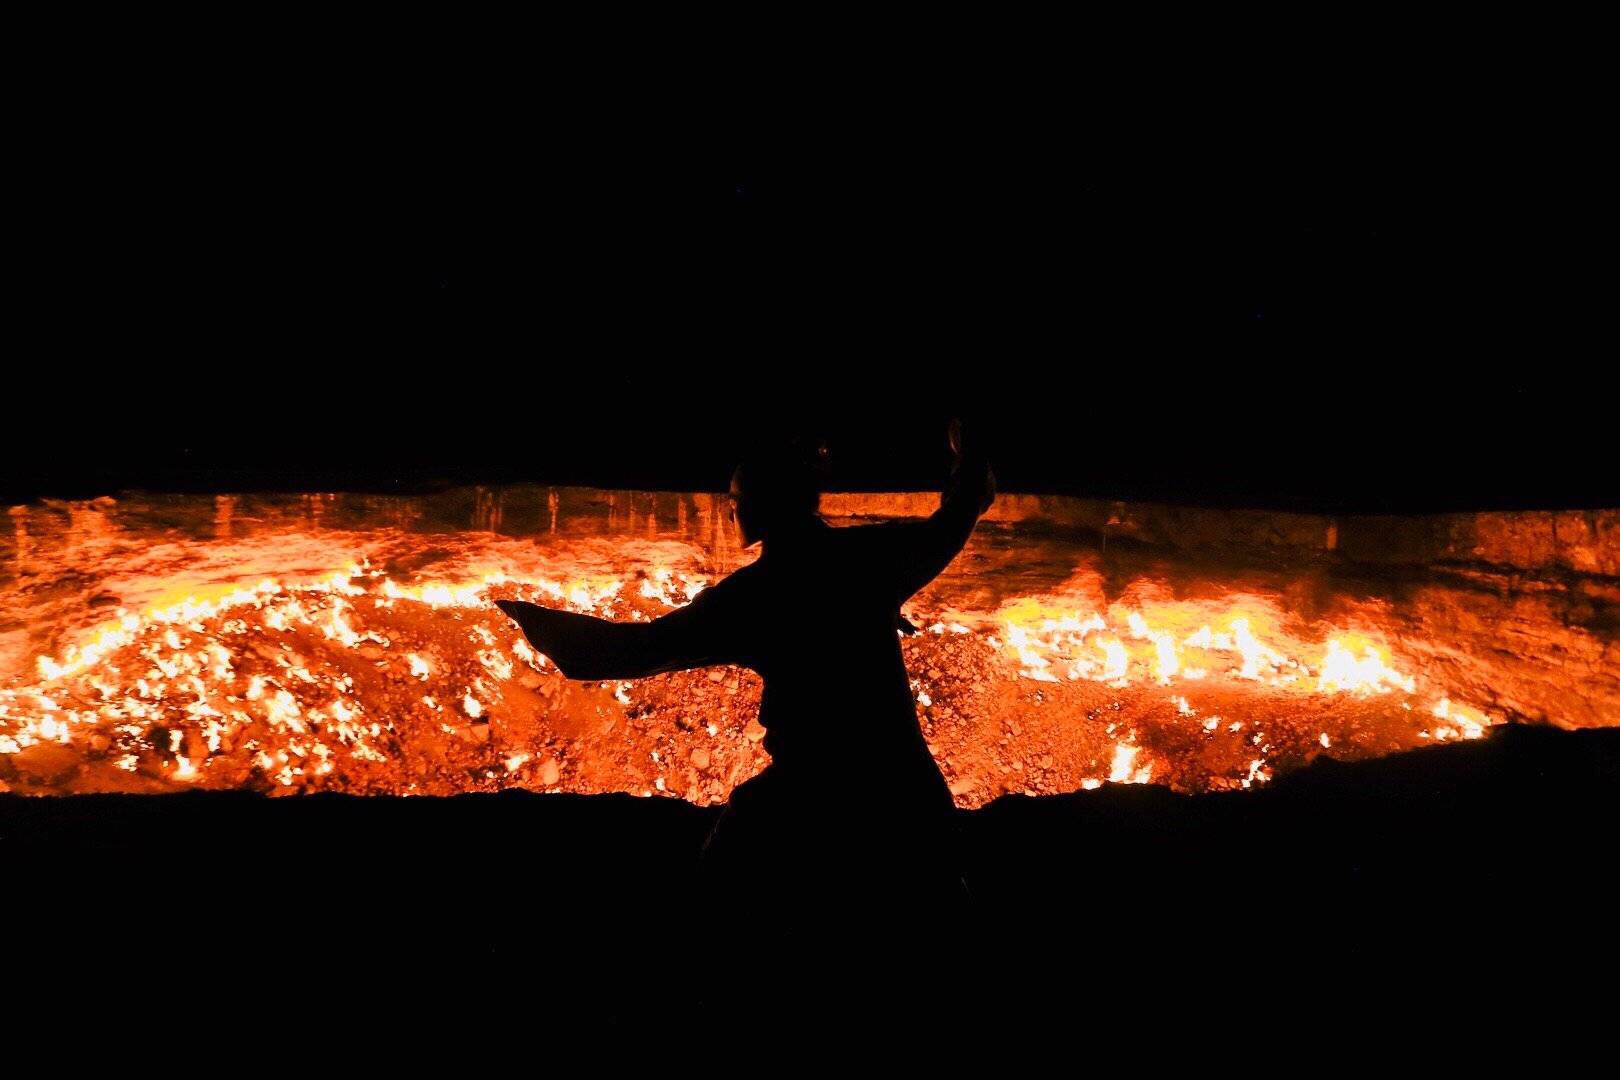 地狱之门- 在土库曼斯坦的荒僻之地，一个永恒燃烧的火海。早就听闻此处大名，但是土库十分封闭，旅行甚不